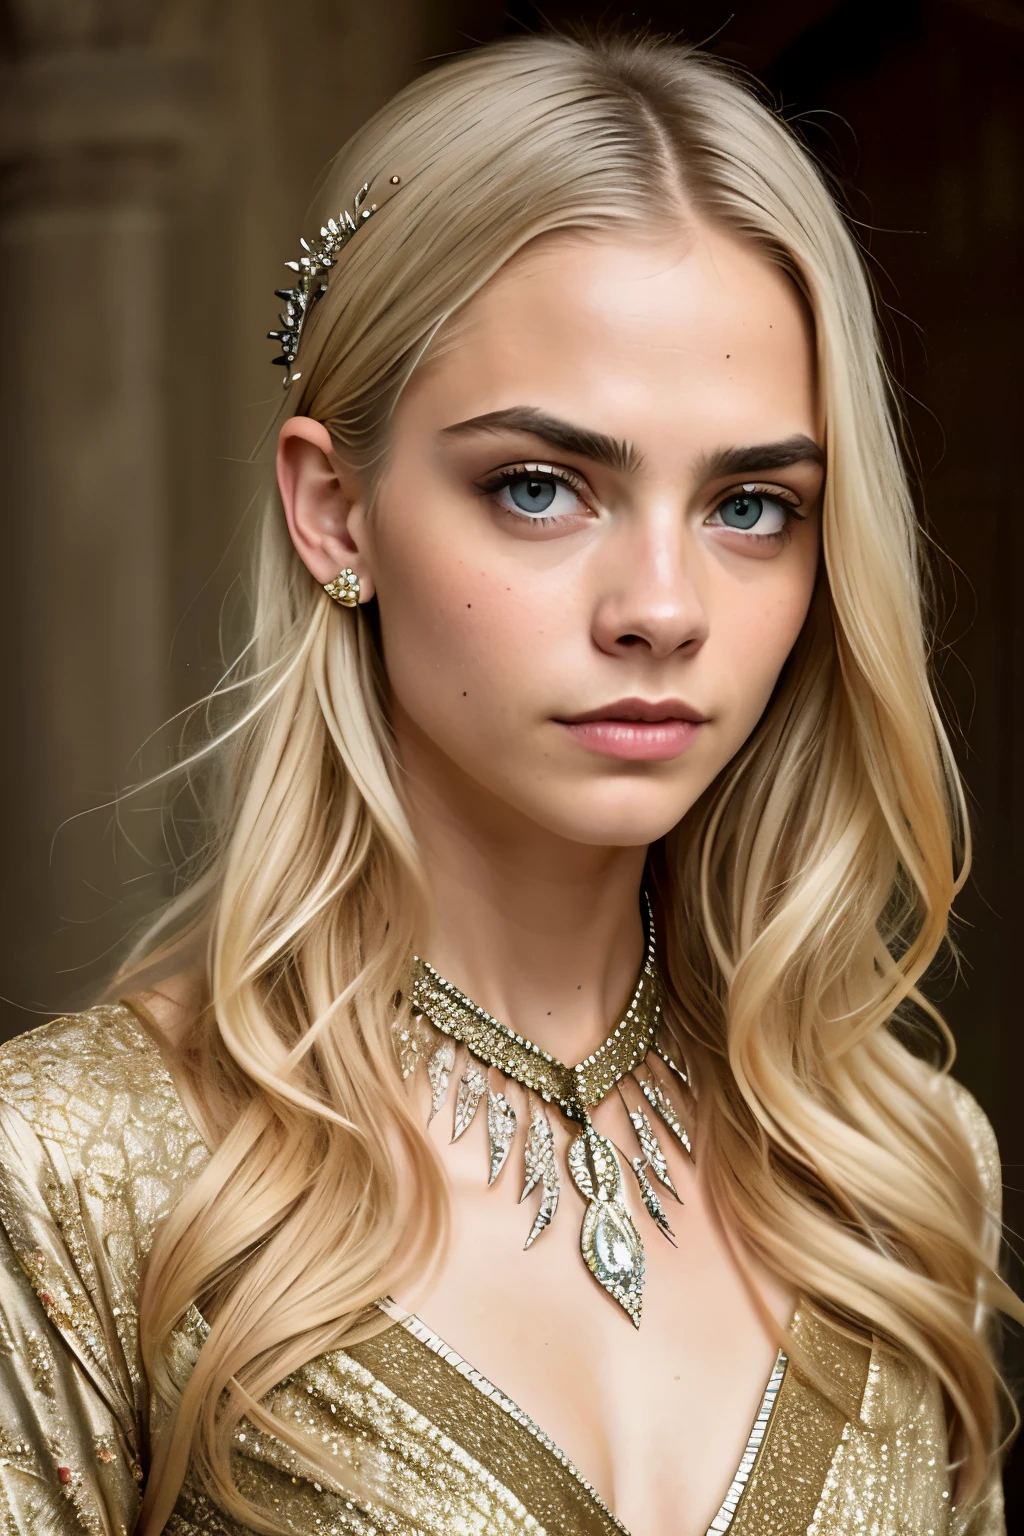 [cara delevingne] como [Daenerys Targaryen] como uma versão da vida real (Daenerys Targaryen),cabelo loiro targaryen, com (vestido sexy), (Decote sexy), Sorriso charmoso, olhos perfeitos, Beleza perfeita, olhos perfurados, obra de arte, linda mulher, Rainha, Princesa de Pedra do Dragão, melhor qualidade, um pequeno, beleza charmosa, uma mulher cativante, aparência atraente, beleza incomparável, a A Guerra do Tronos-inspired costume, um close de uma mulher da idade média, Jantar "A Guerra do Trono," decote profundo, princesa guerreira, corpo saudável, Figura atraente, estilo de "A Guerra do Trono," bela moça, linda mulher, roupas medievais, mulher deslumbrante, 8K, detalhes insanos, vestido feito de roupas e joias, cabelo perfeito, cabelo penteado, Olhos de alta clareza, mãos perfeitas, dedos perfeitos, olhos perfeitos, Ultra realistic, altamente detalhado intricado, fotografia de estilo fotorrealista, Foco nítido nos olhos, iluminação cinematográfica